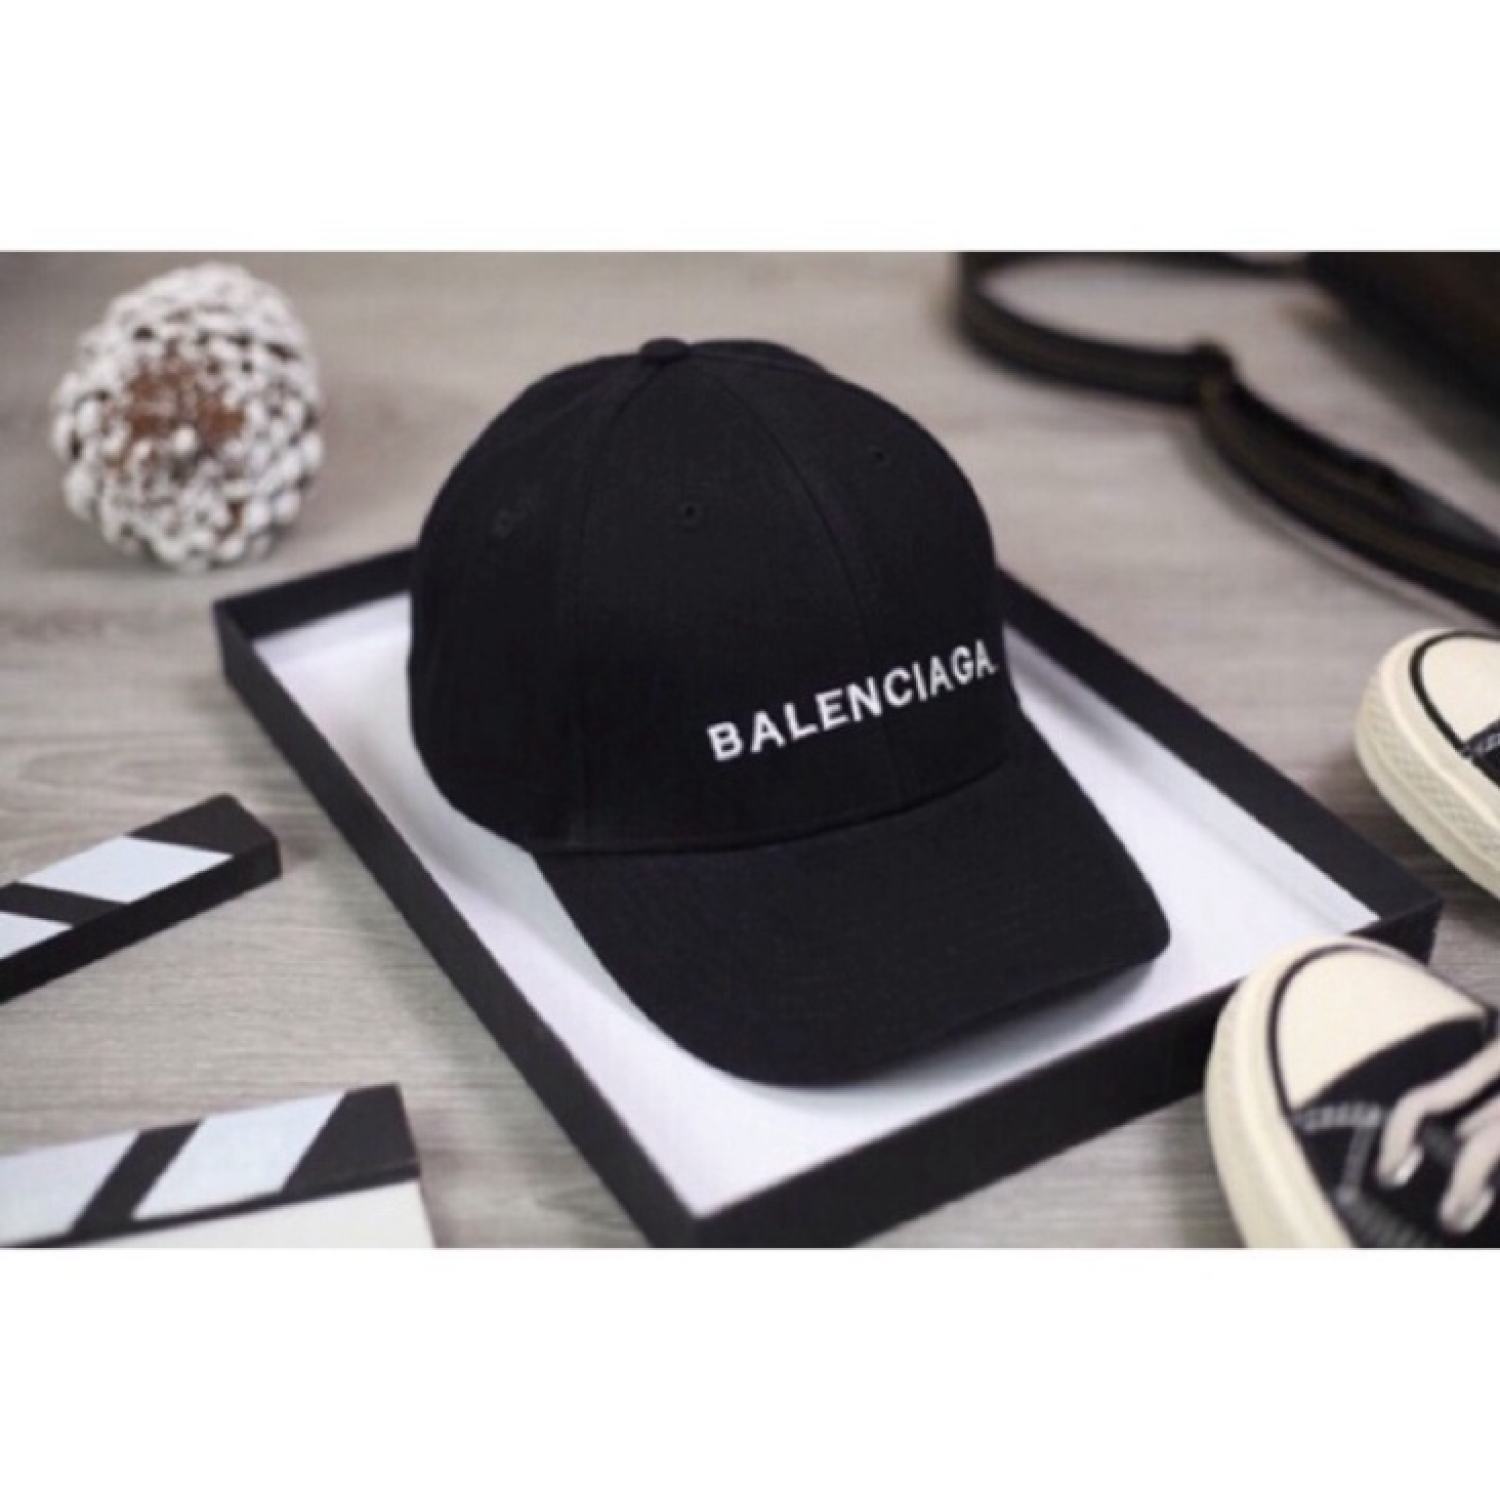 Giới trẻ châu Á đang sốt rần rần vì chiếc mũ của bố cool không tưởng đến  từ Balenciaga